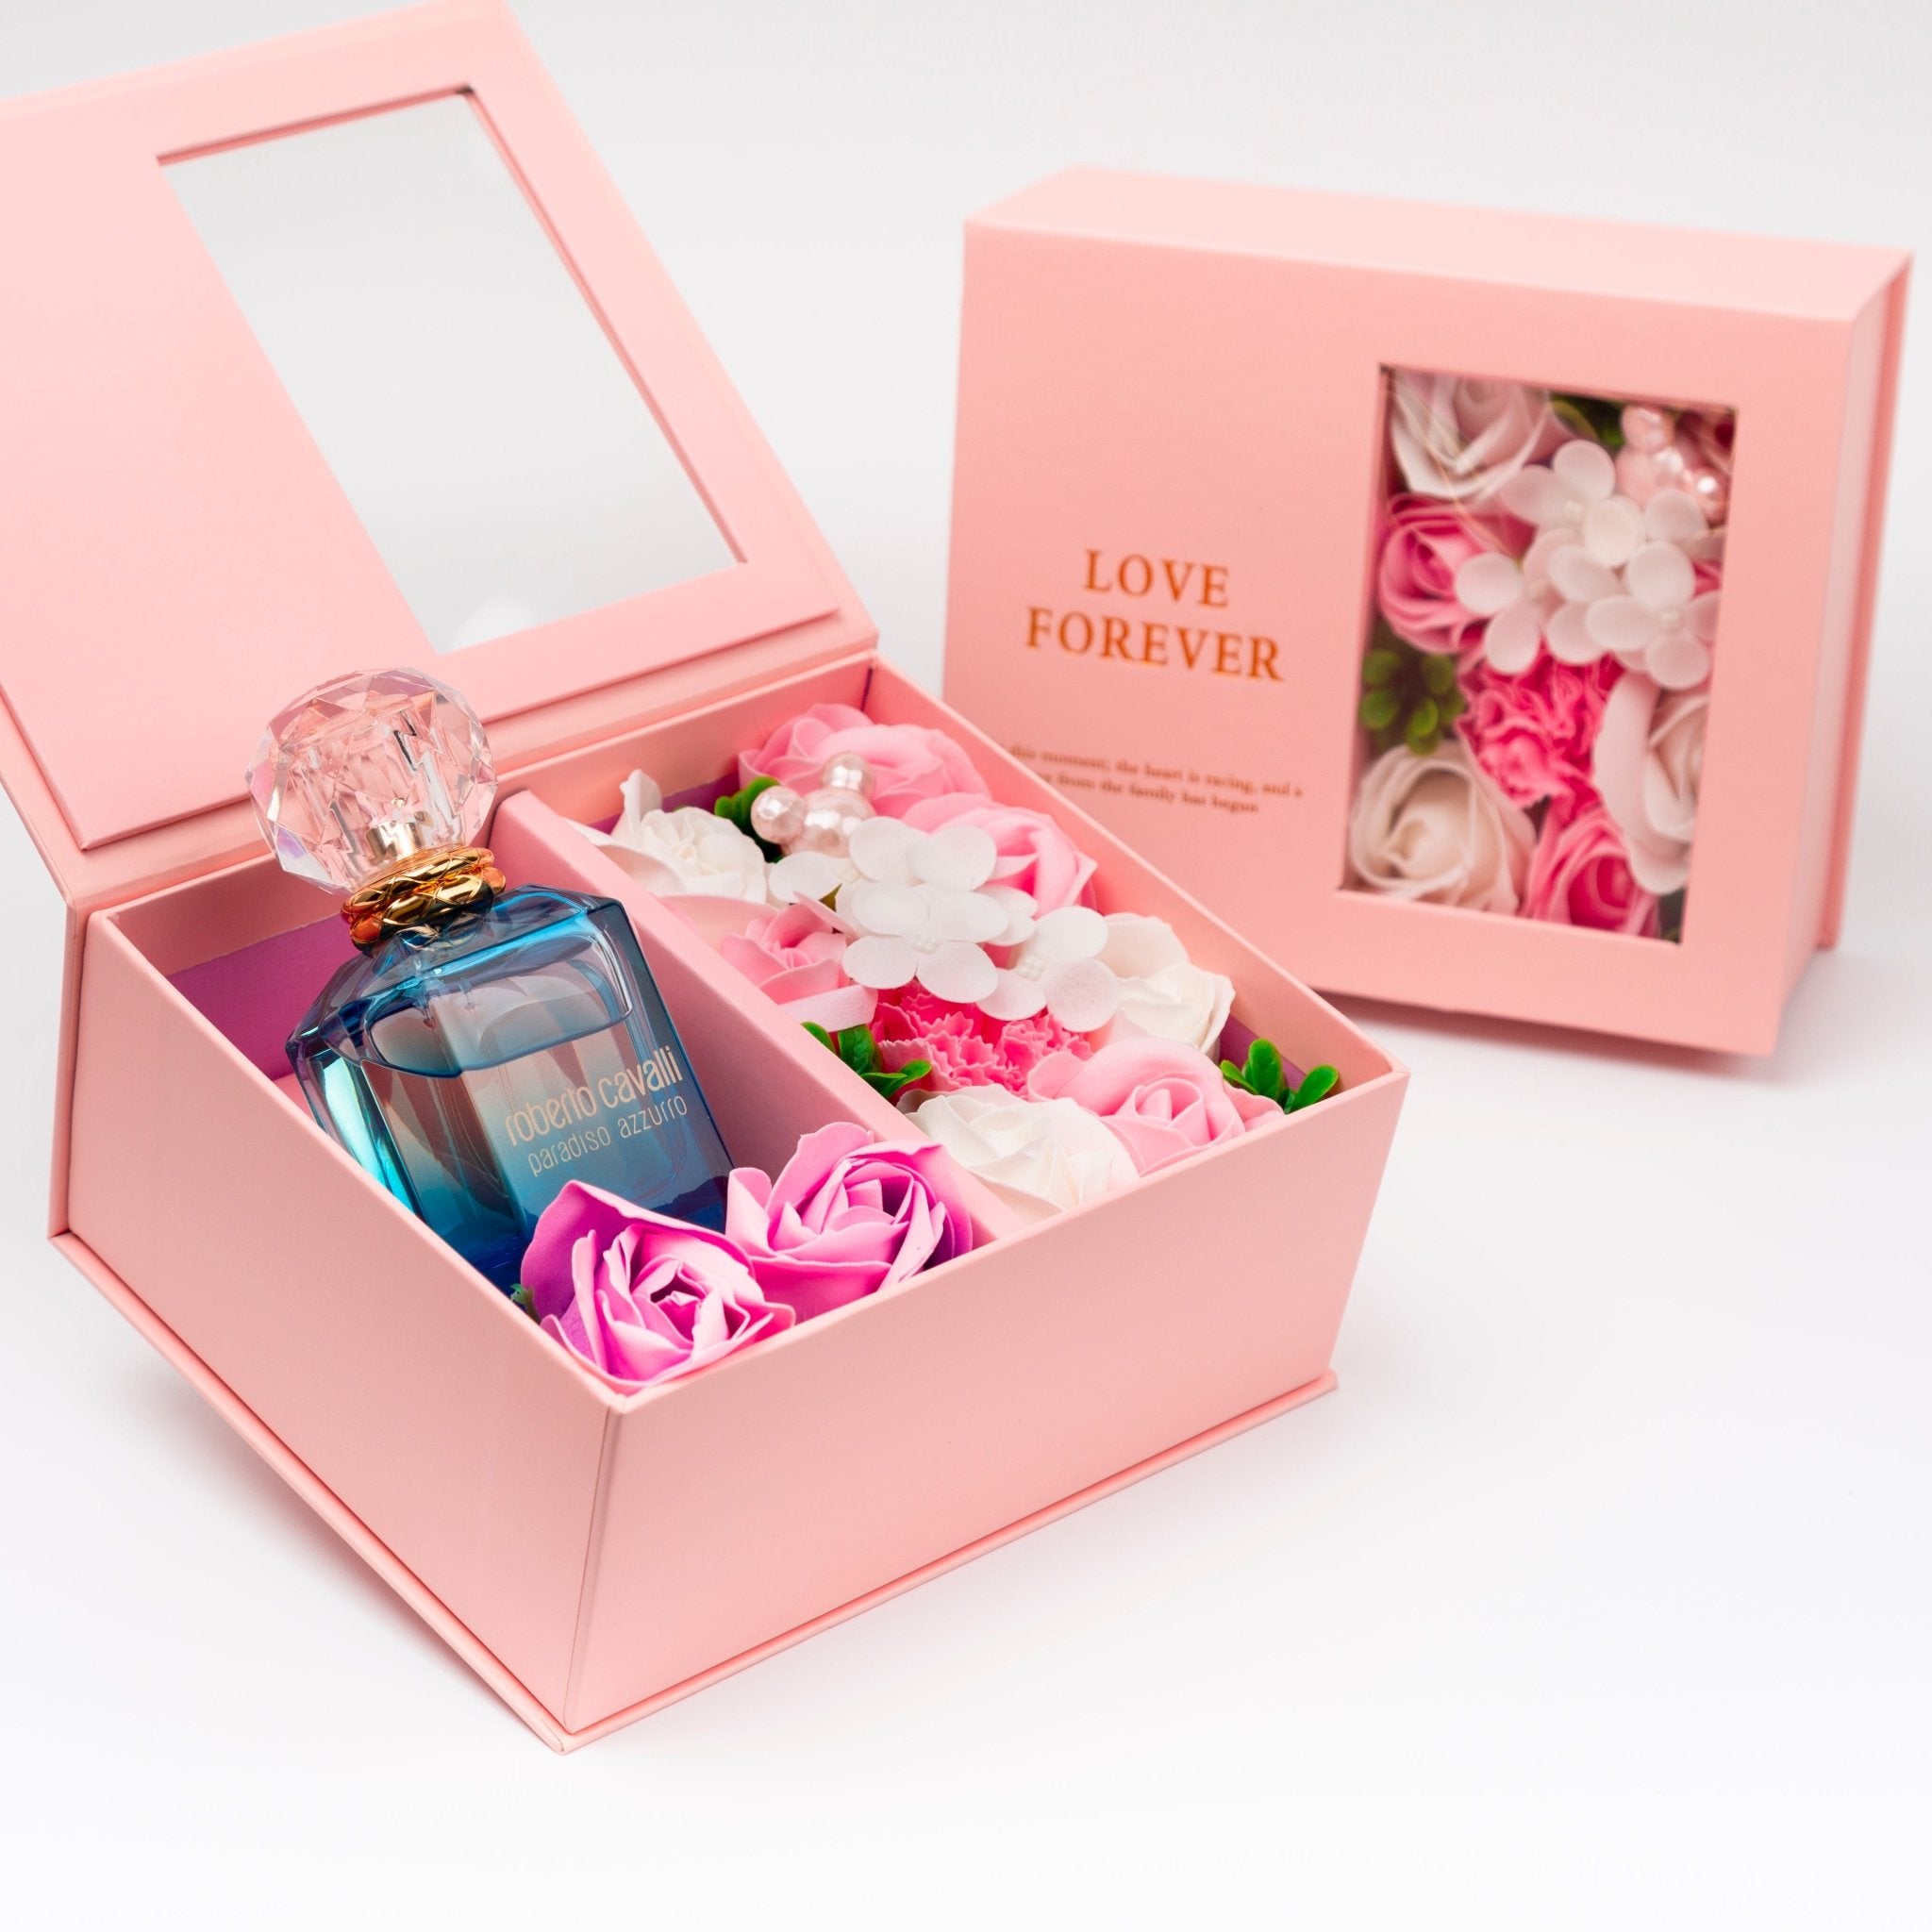 Flower Box - Perfume Gift For Women 15 - #shoFlower Box - Perfume Gift For Women 15p_name#Flower Box - Perfume Gift For Women 15Gift Boxes & TinsTakreemTakreem.joWomenPerfumeFlower Box - Perfume Gift For Women 15 - Takreem.jo